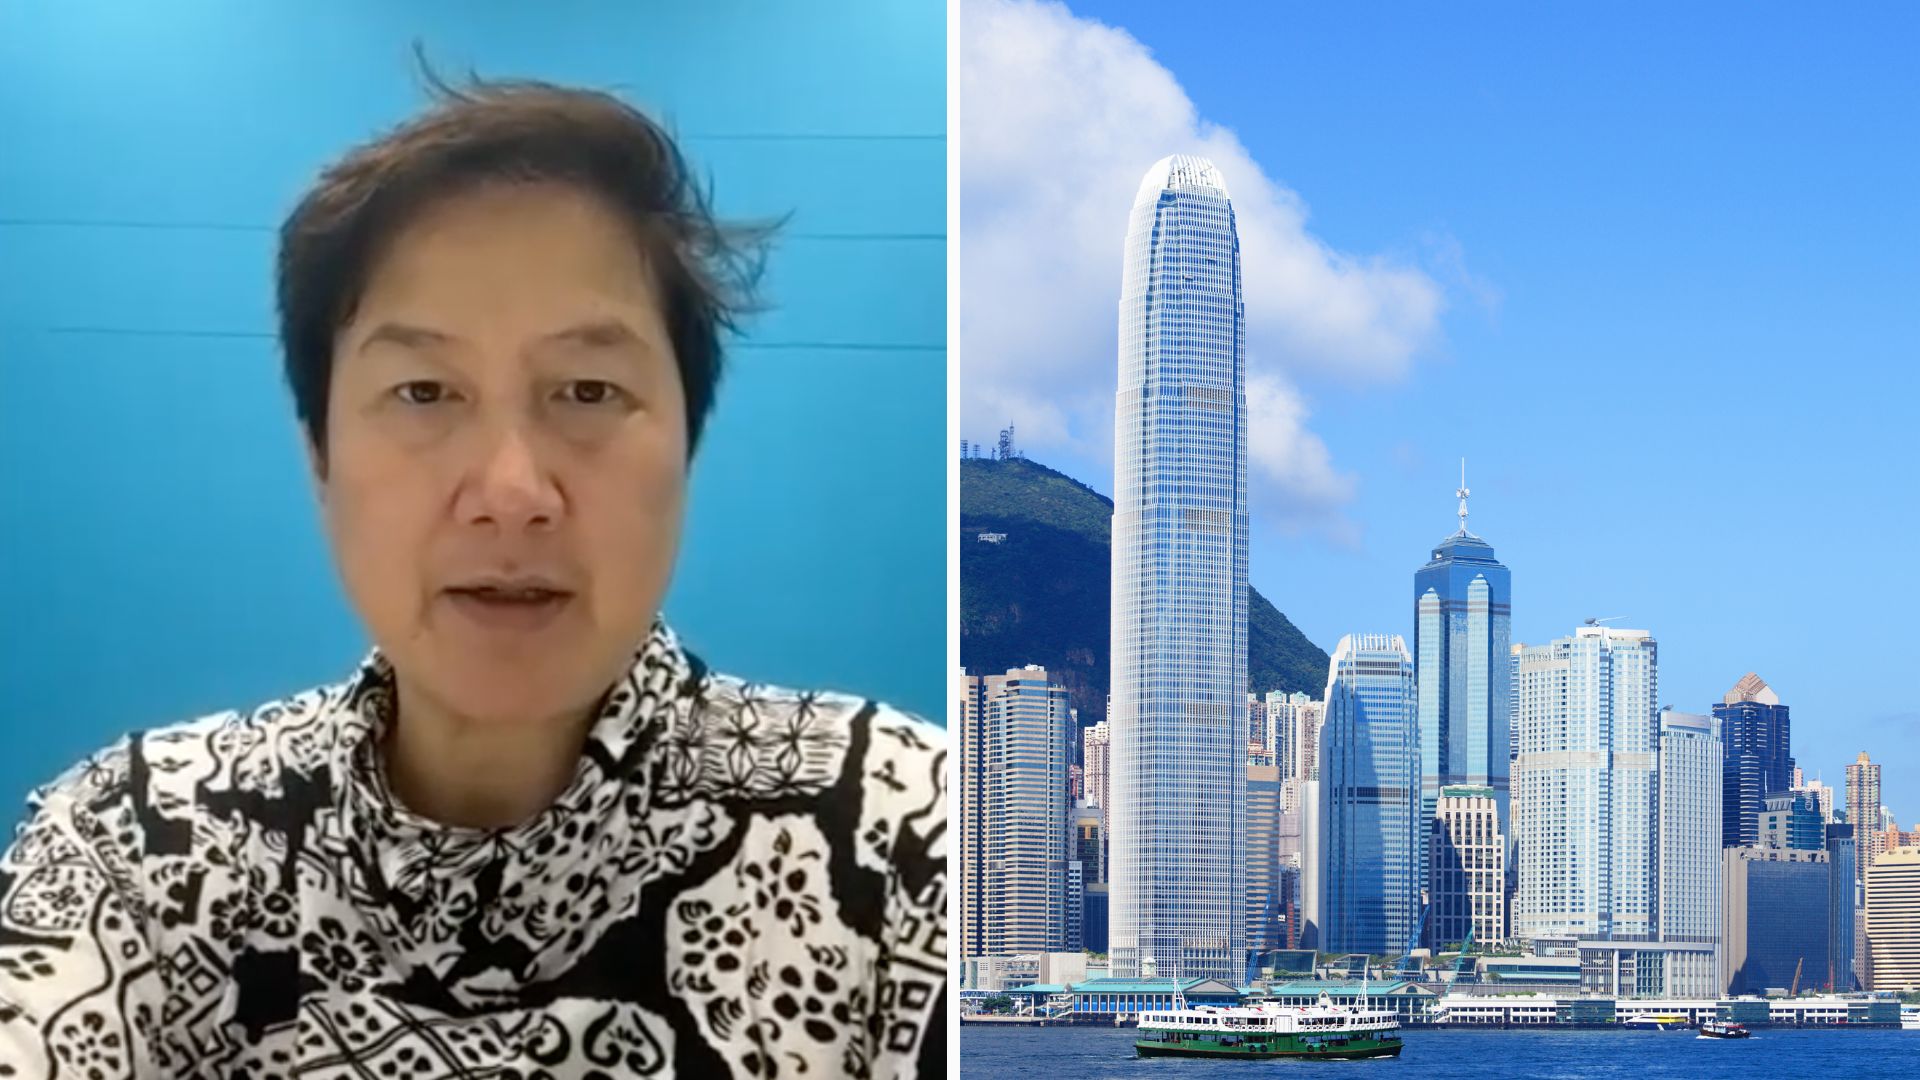 Hong Kong potrebbe dover affrontare un arretrato nelle richieste di licenze crittografiche man mano che la domanda cresce, afferma l'ex regolatore SFC